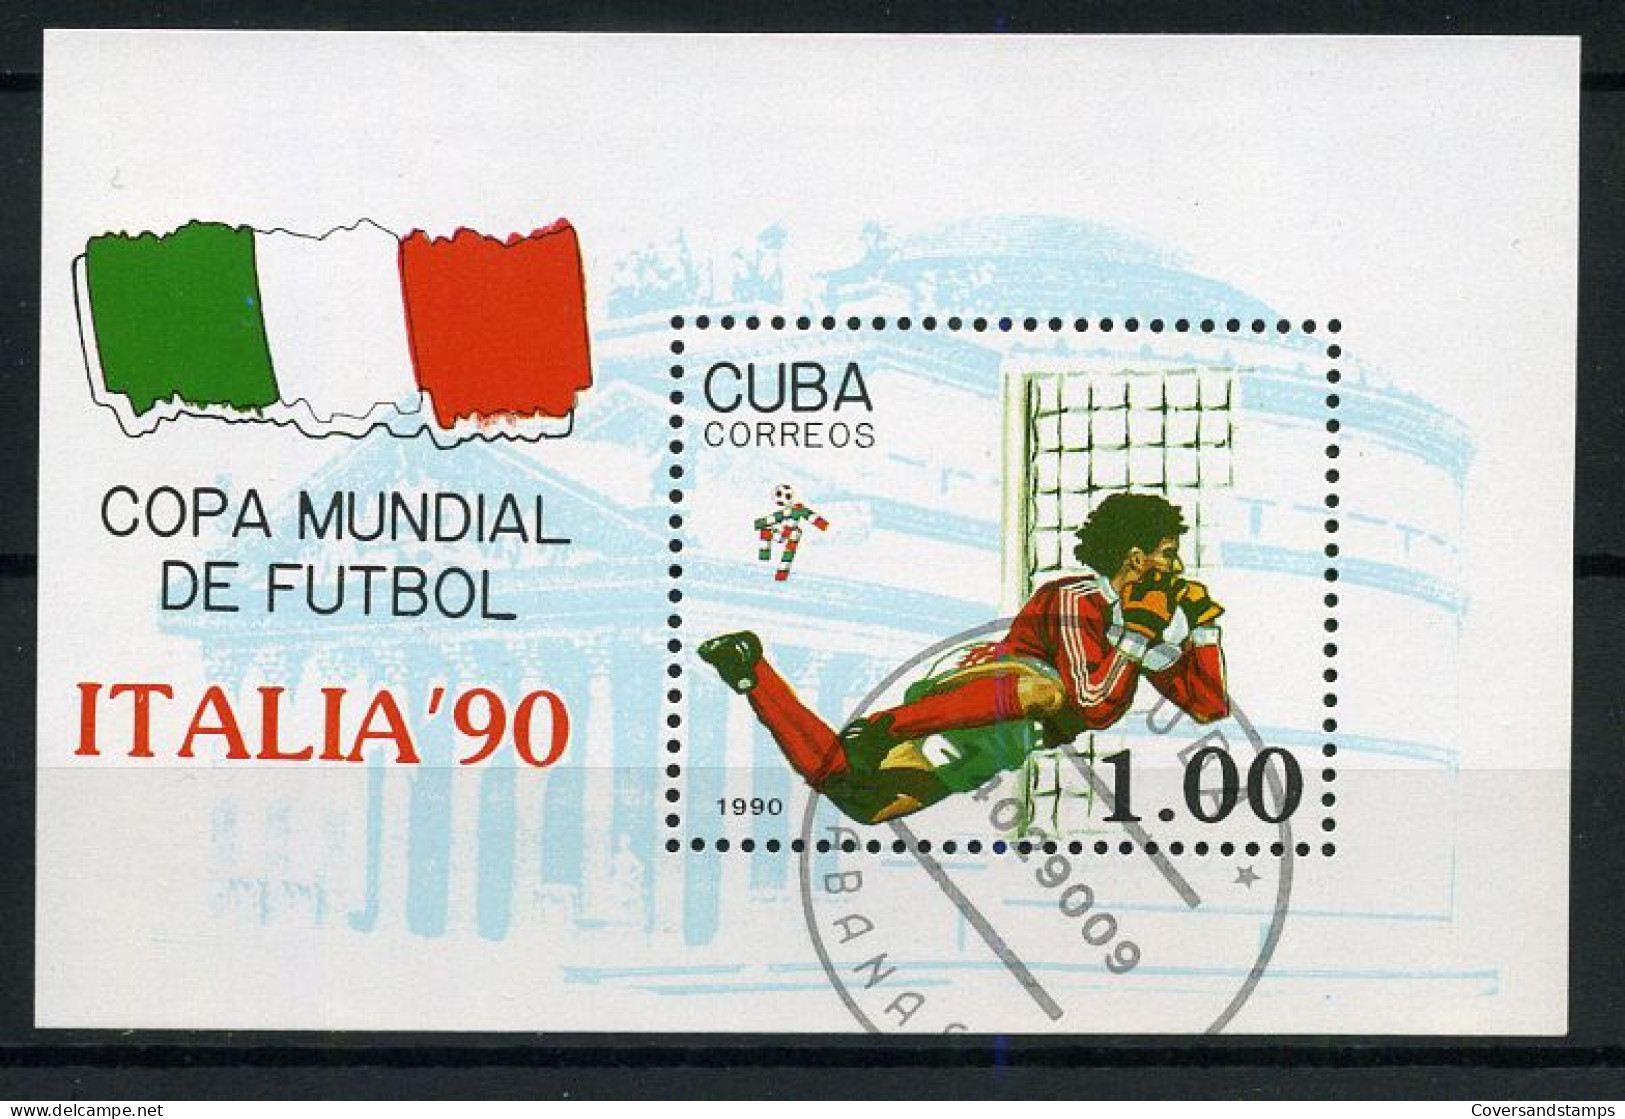 Cuba - Copa Mundial De Futbol, Italia '90 - 1990 – Italia